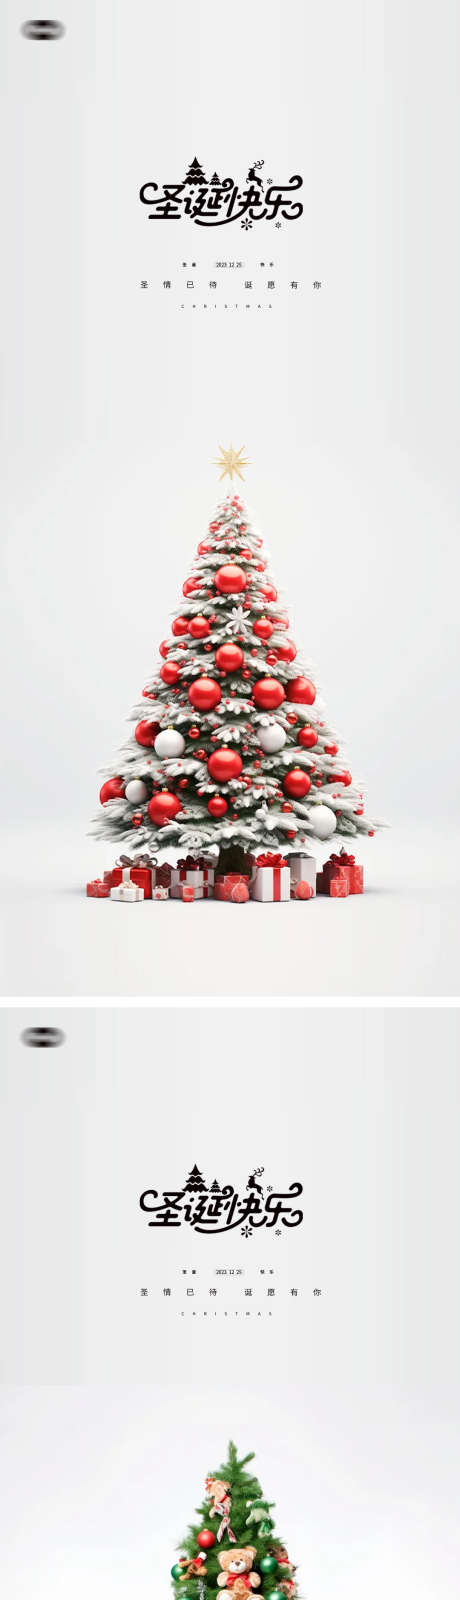 圣诞节圣诞老人平安夜海报_源文件下载_PSD格式_1080X4705像素-唯美,小清新,高端,圣诞树,苹果,简约,圣诞,海报,平安夜,圣诞,圣诞节-作品编号:2023121810091552-志设-zs9.com